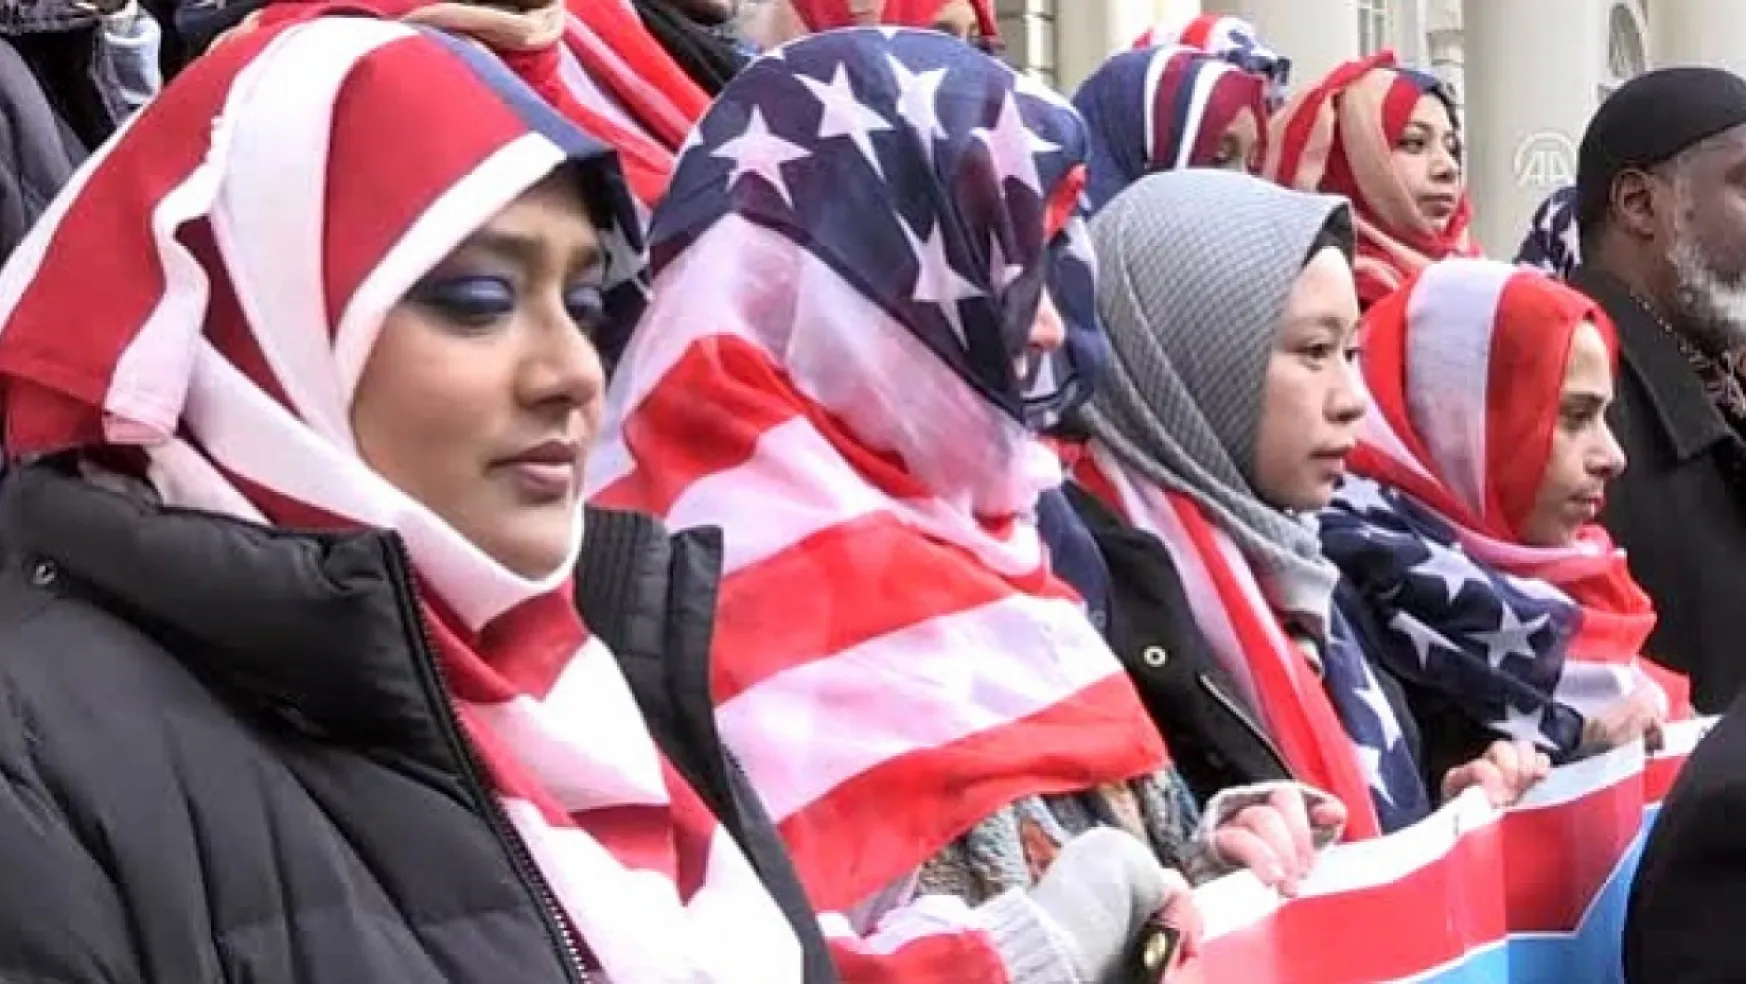 ABD'li Müslüman gruplar Biden'ın iftar programını protesto etme kararı aldı